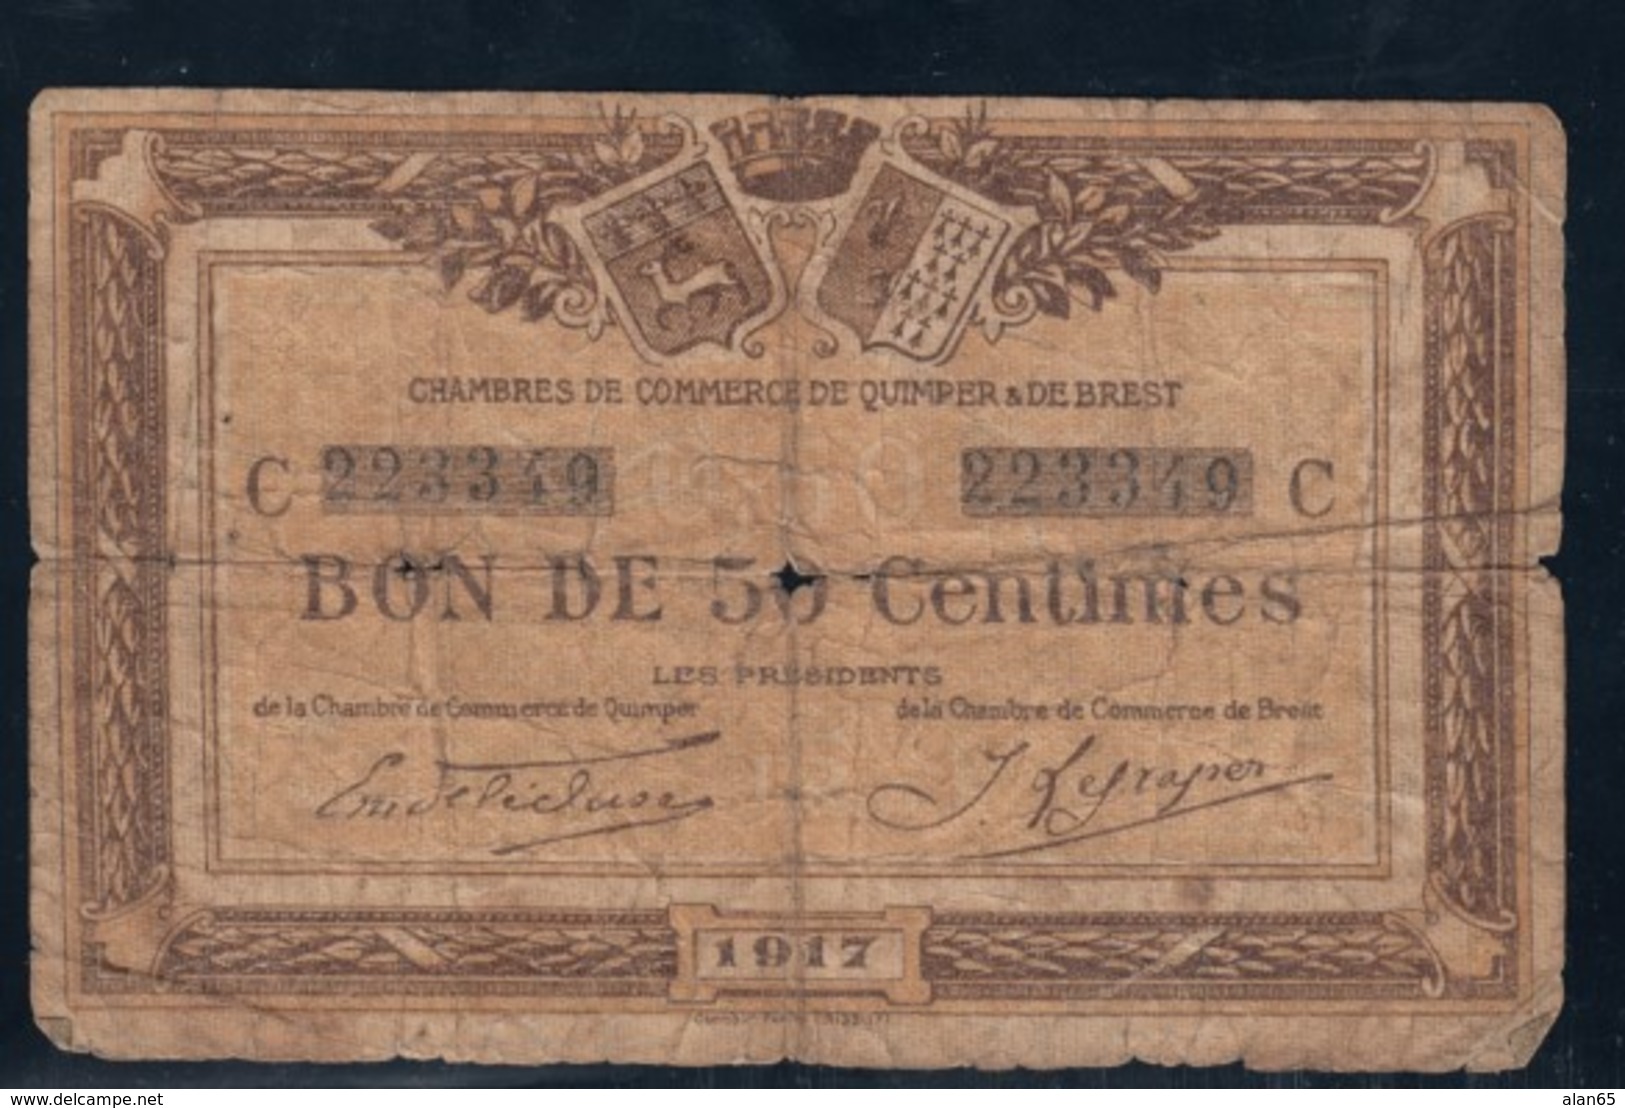 Quimper & Brest Chambre De Commerce 1917 50c Note - Chambre De Commerce